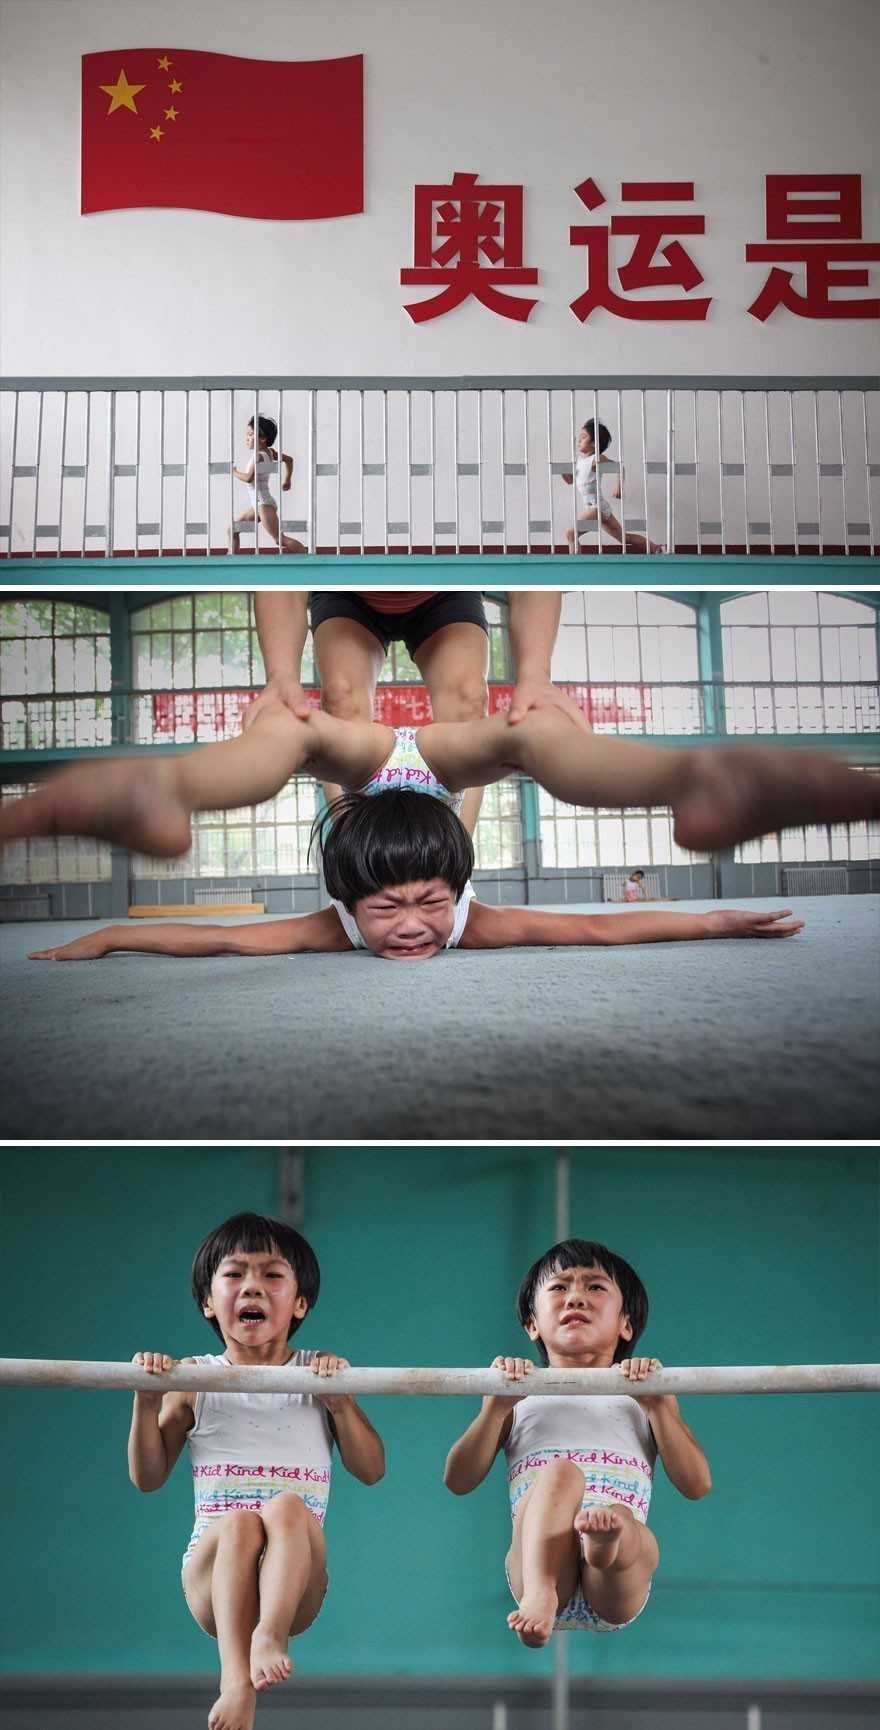 20. Marzenia gimnastyczne bliźniаków – Chiny